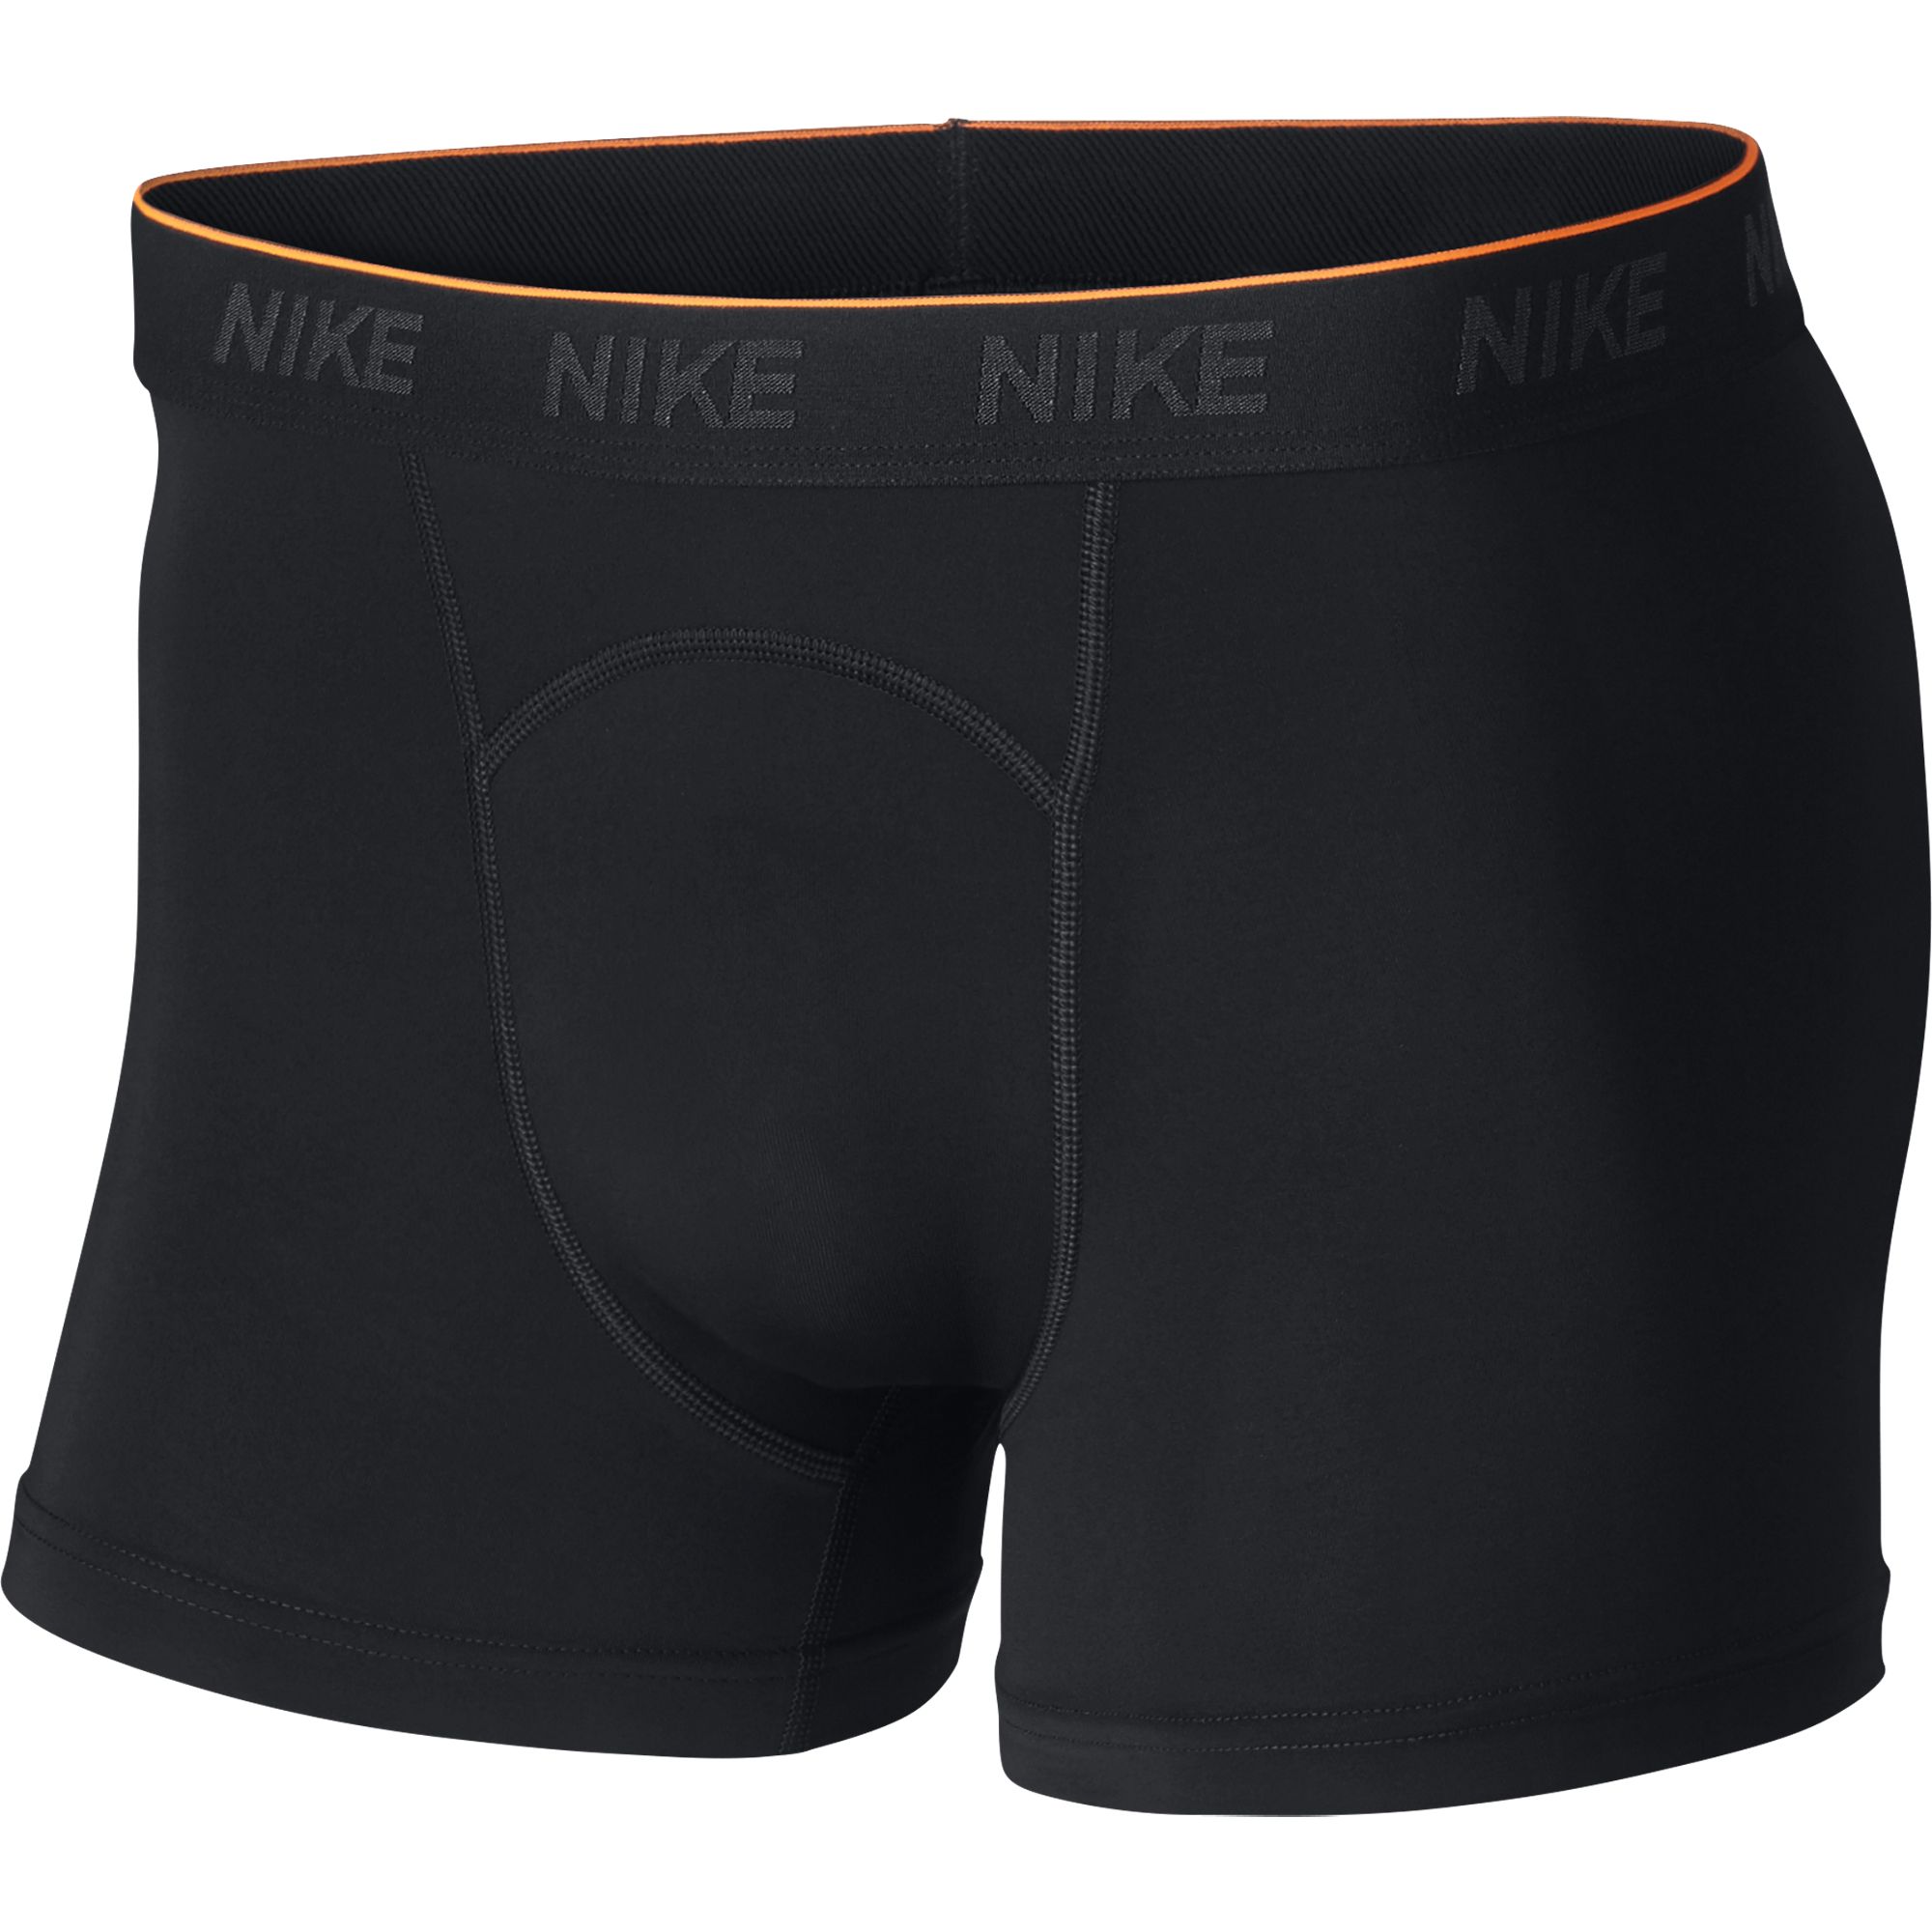 Шорты Nike Men's Training Briefs (2 Pack) - картинка